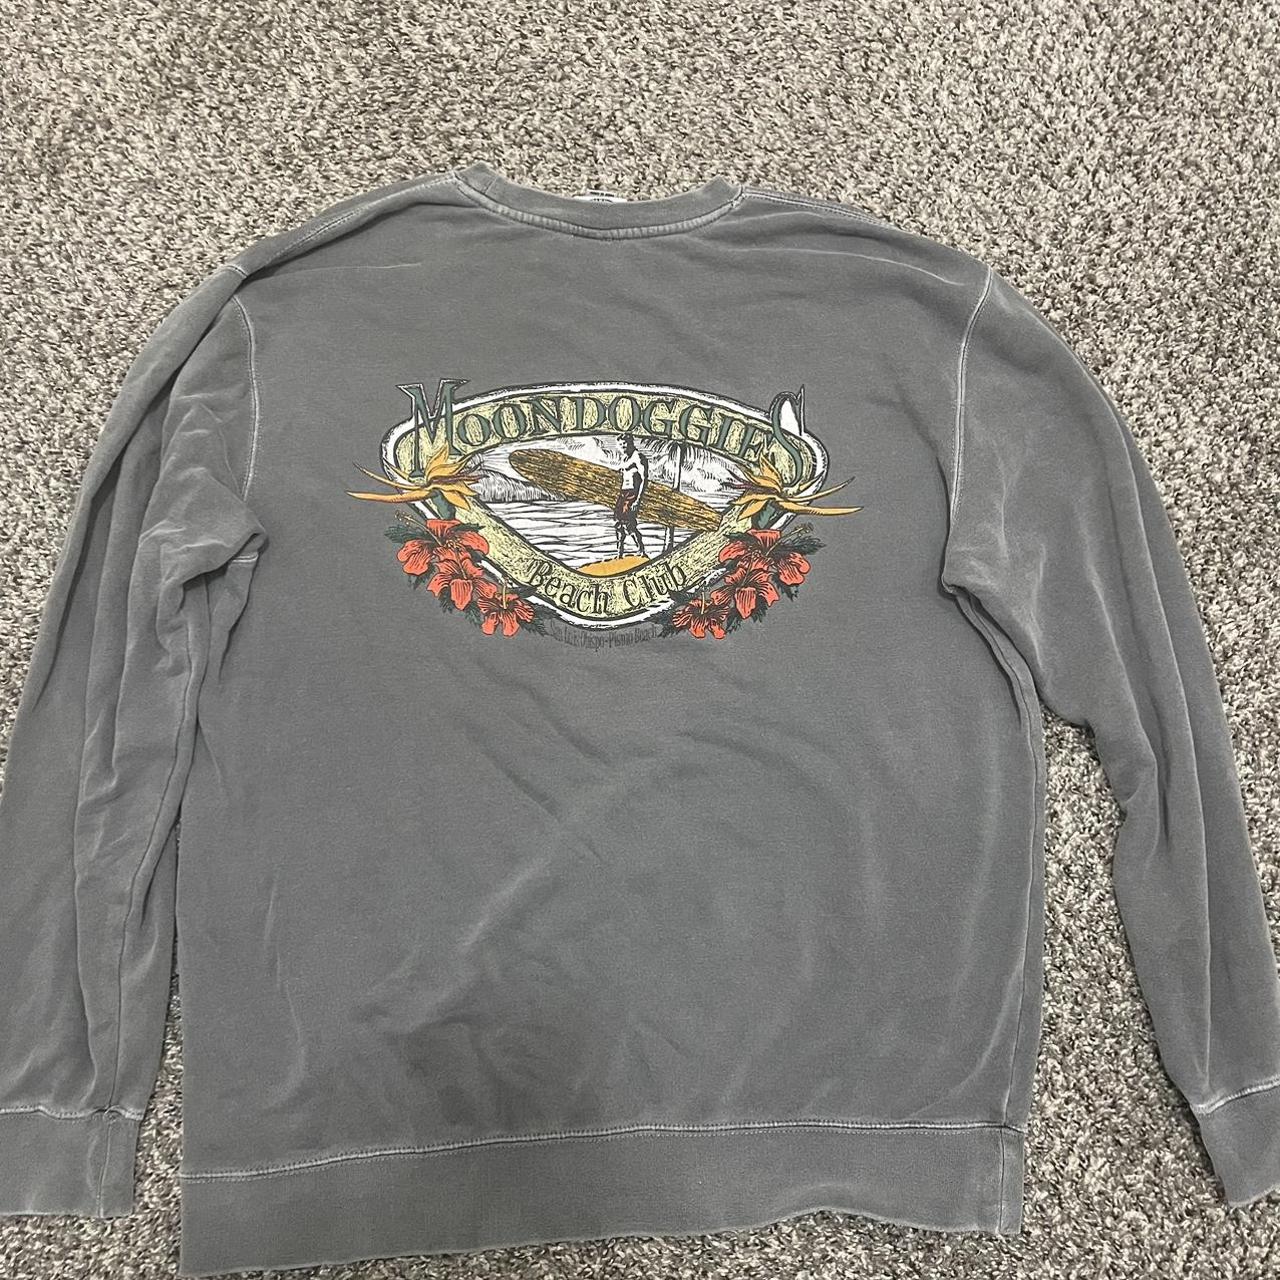 Vintage Colorado Avalanche Sweatshirt 90s Legends - Depop